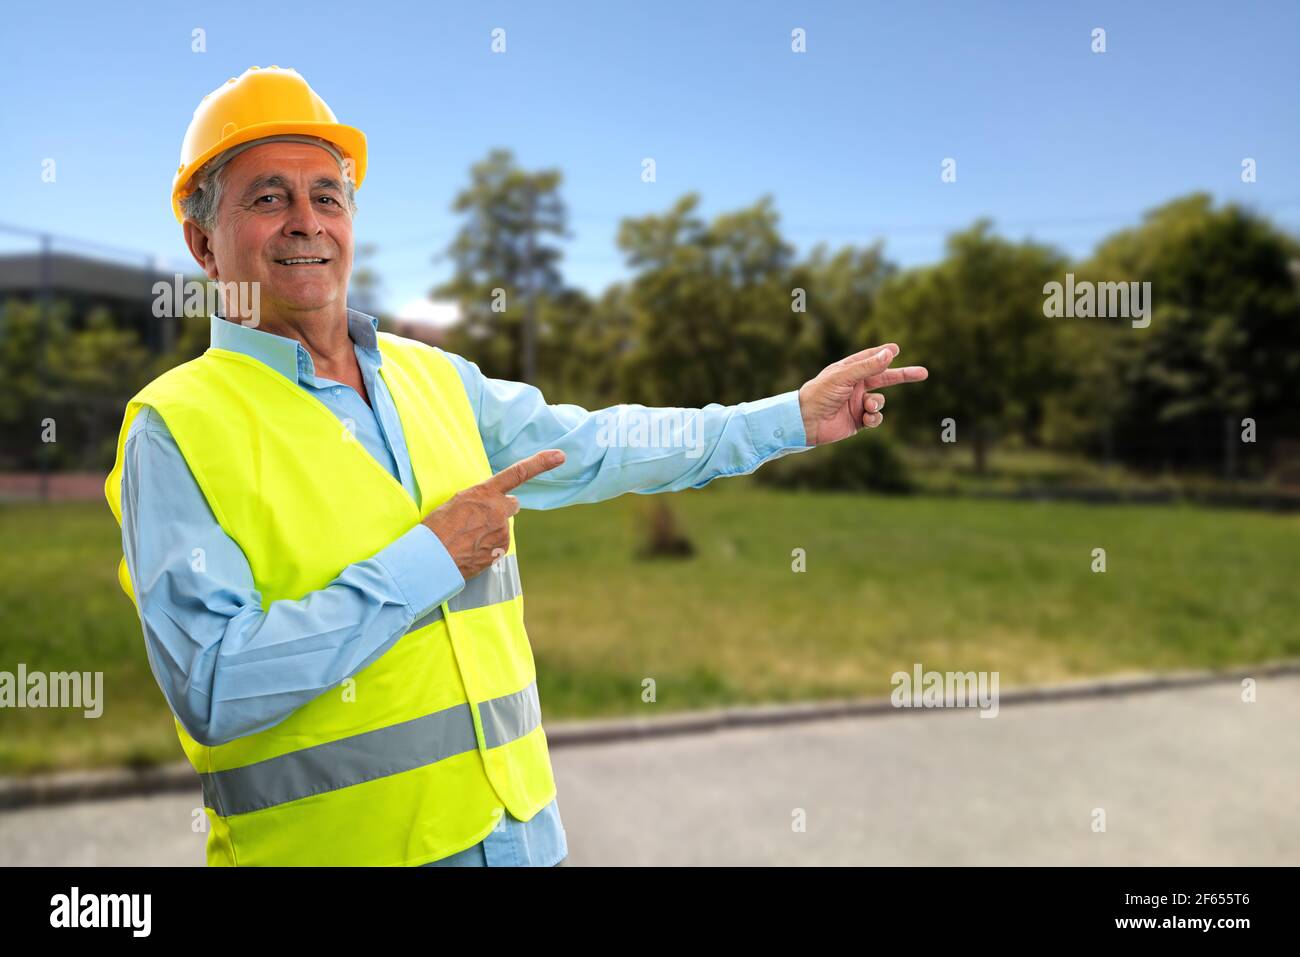 Fröhlicher älterer Konstrukteur Mann lächelnd Zeigefinger auf Park zeigend Natur Hintergrund trägt fluoreszierende Weste und schützende Hardhut Stockfoto